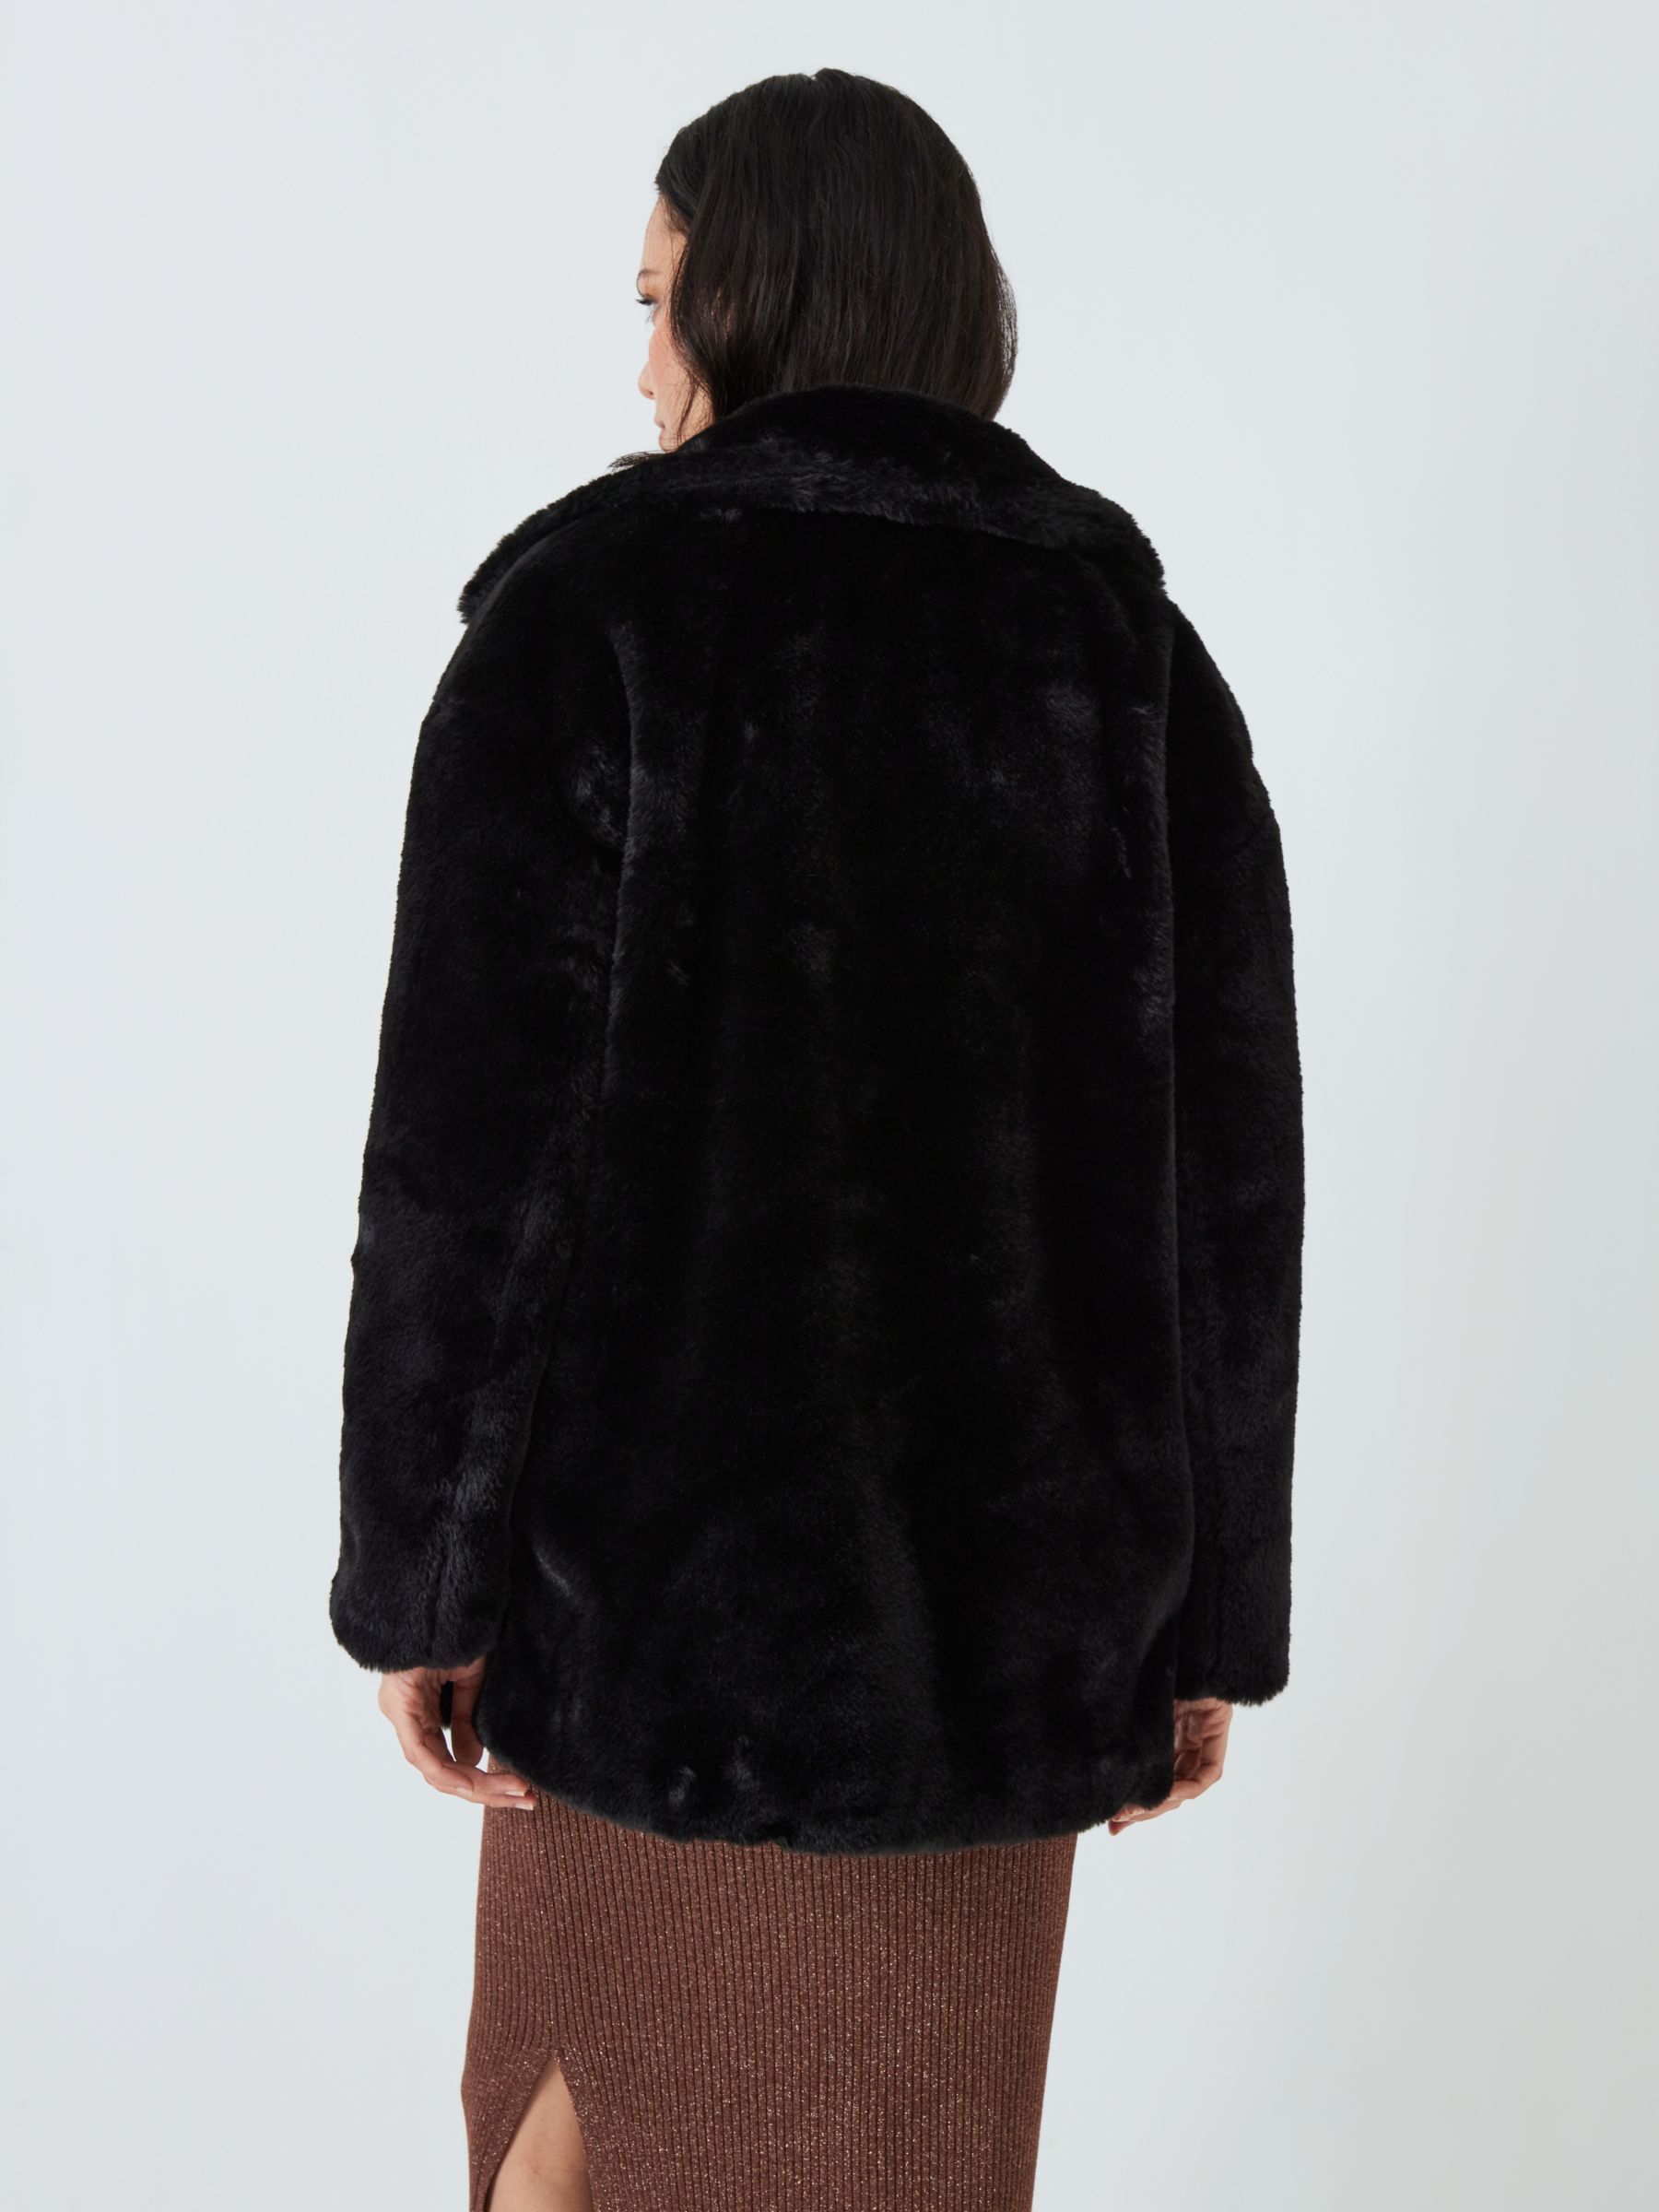 John Lewis ANYDAY Plain Faux Fur Coat, Black